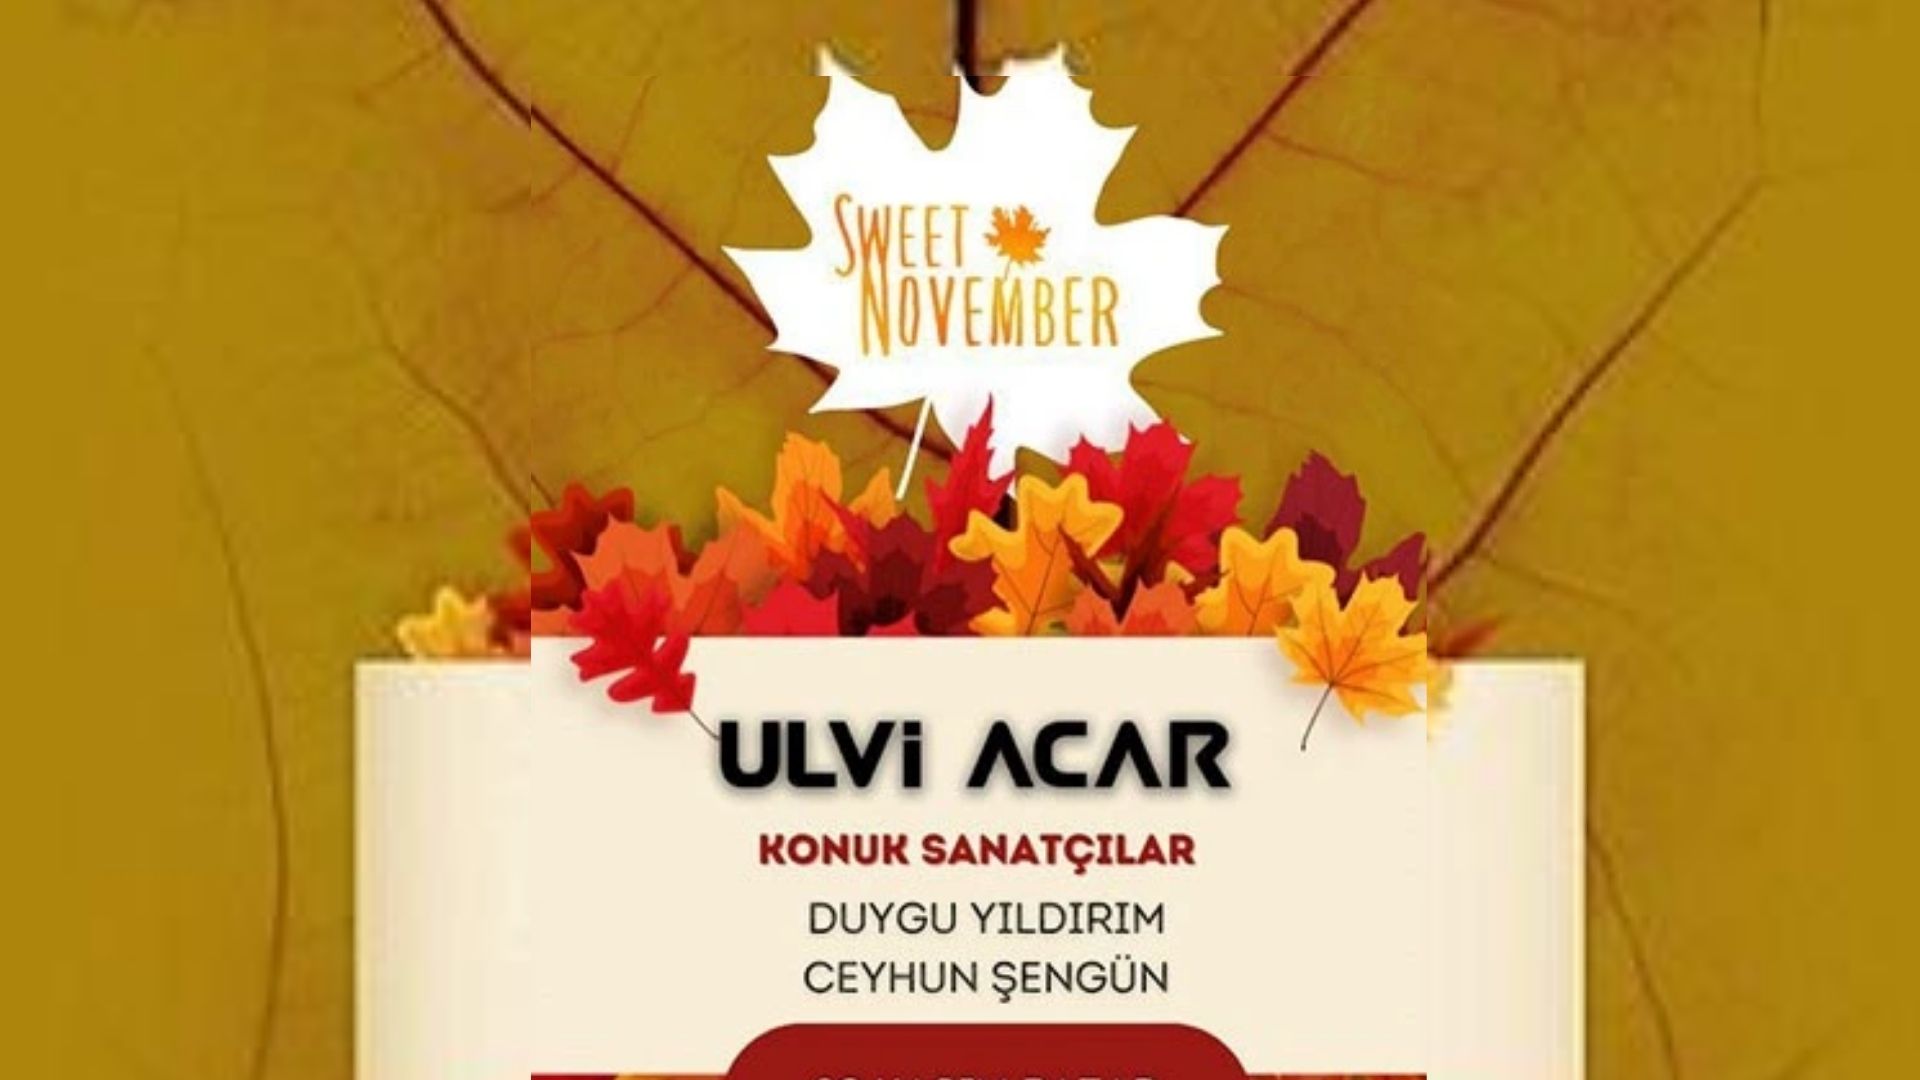 sweet november dj ulvi acar istanbul'da konser ve tiyatro oyunları